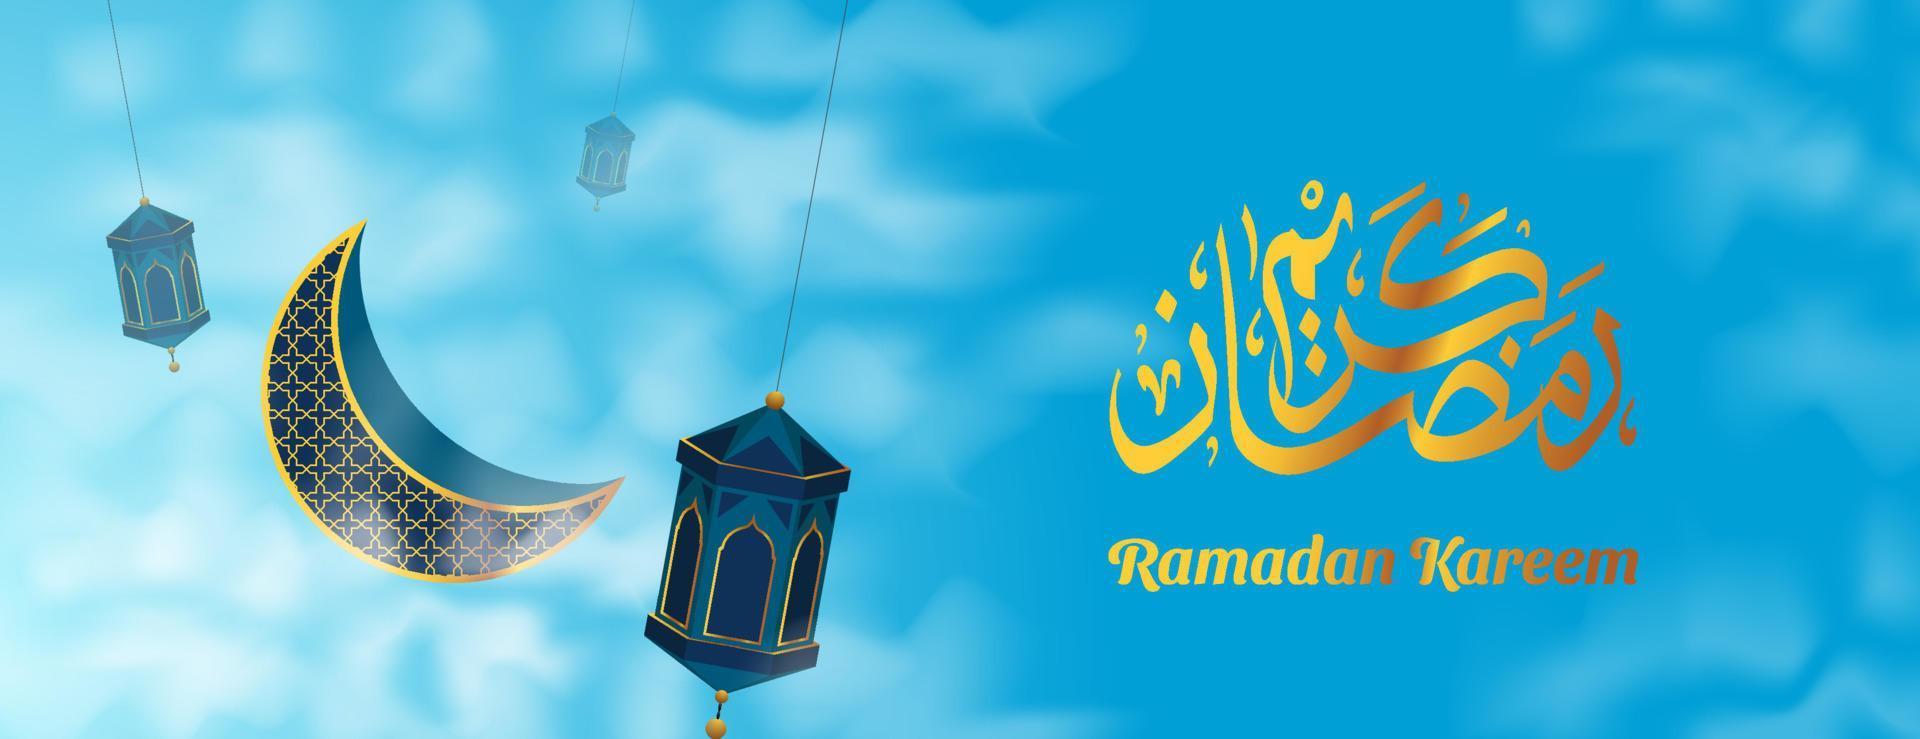 fundo de banner ramadan kareem com caligrafia árabe dourada. ilustração vetorial vetor